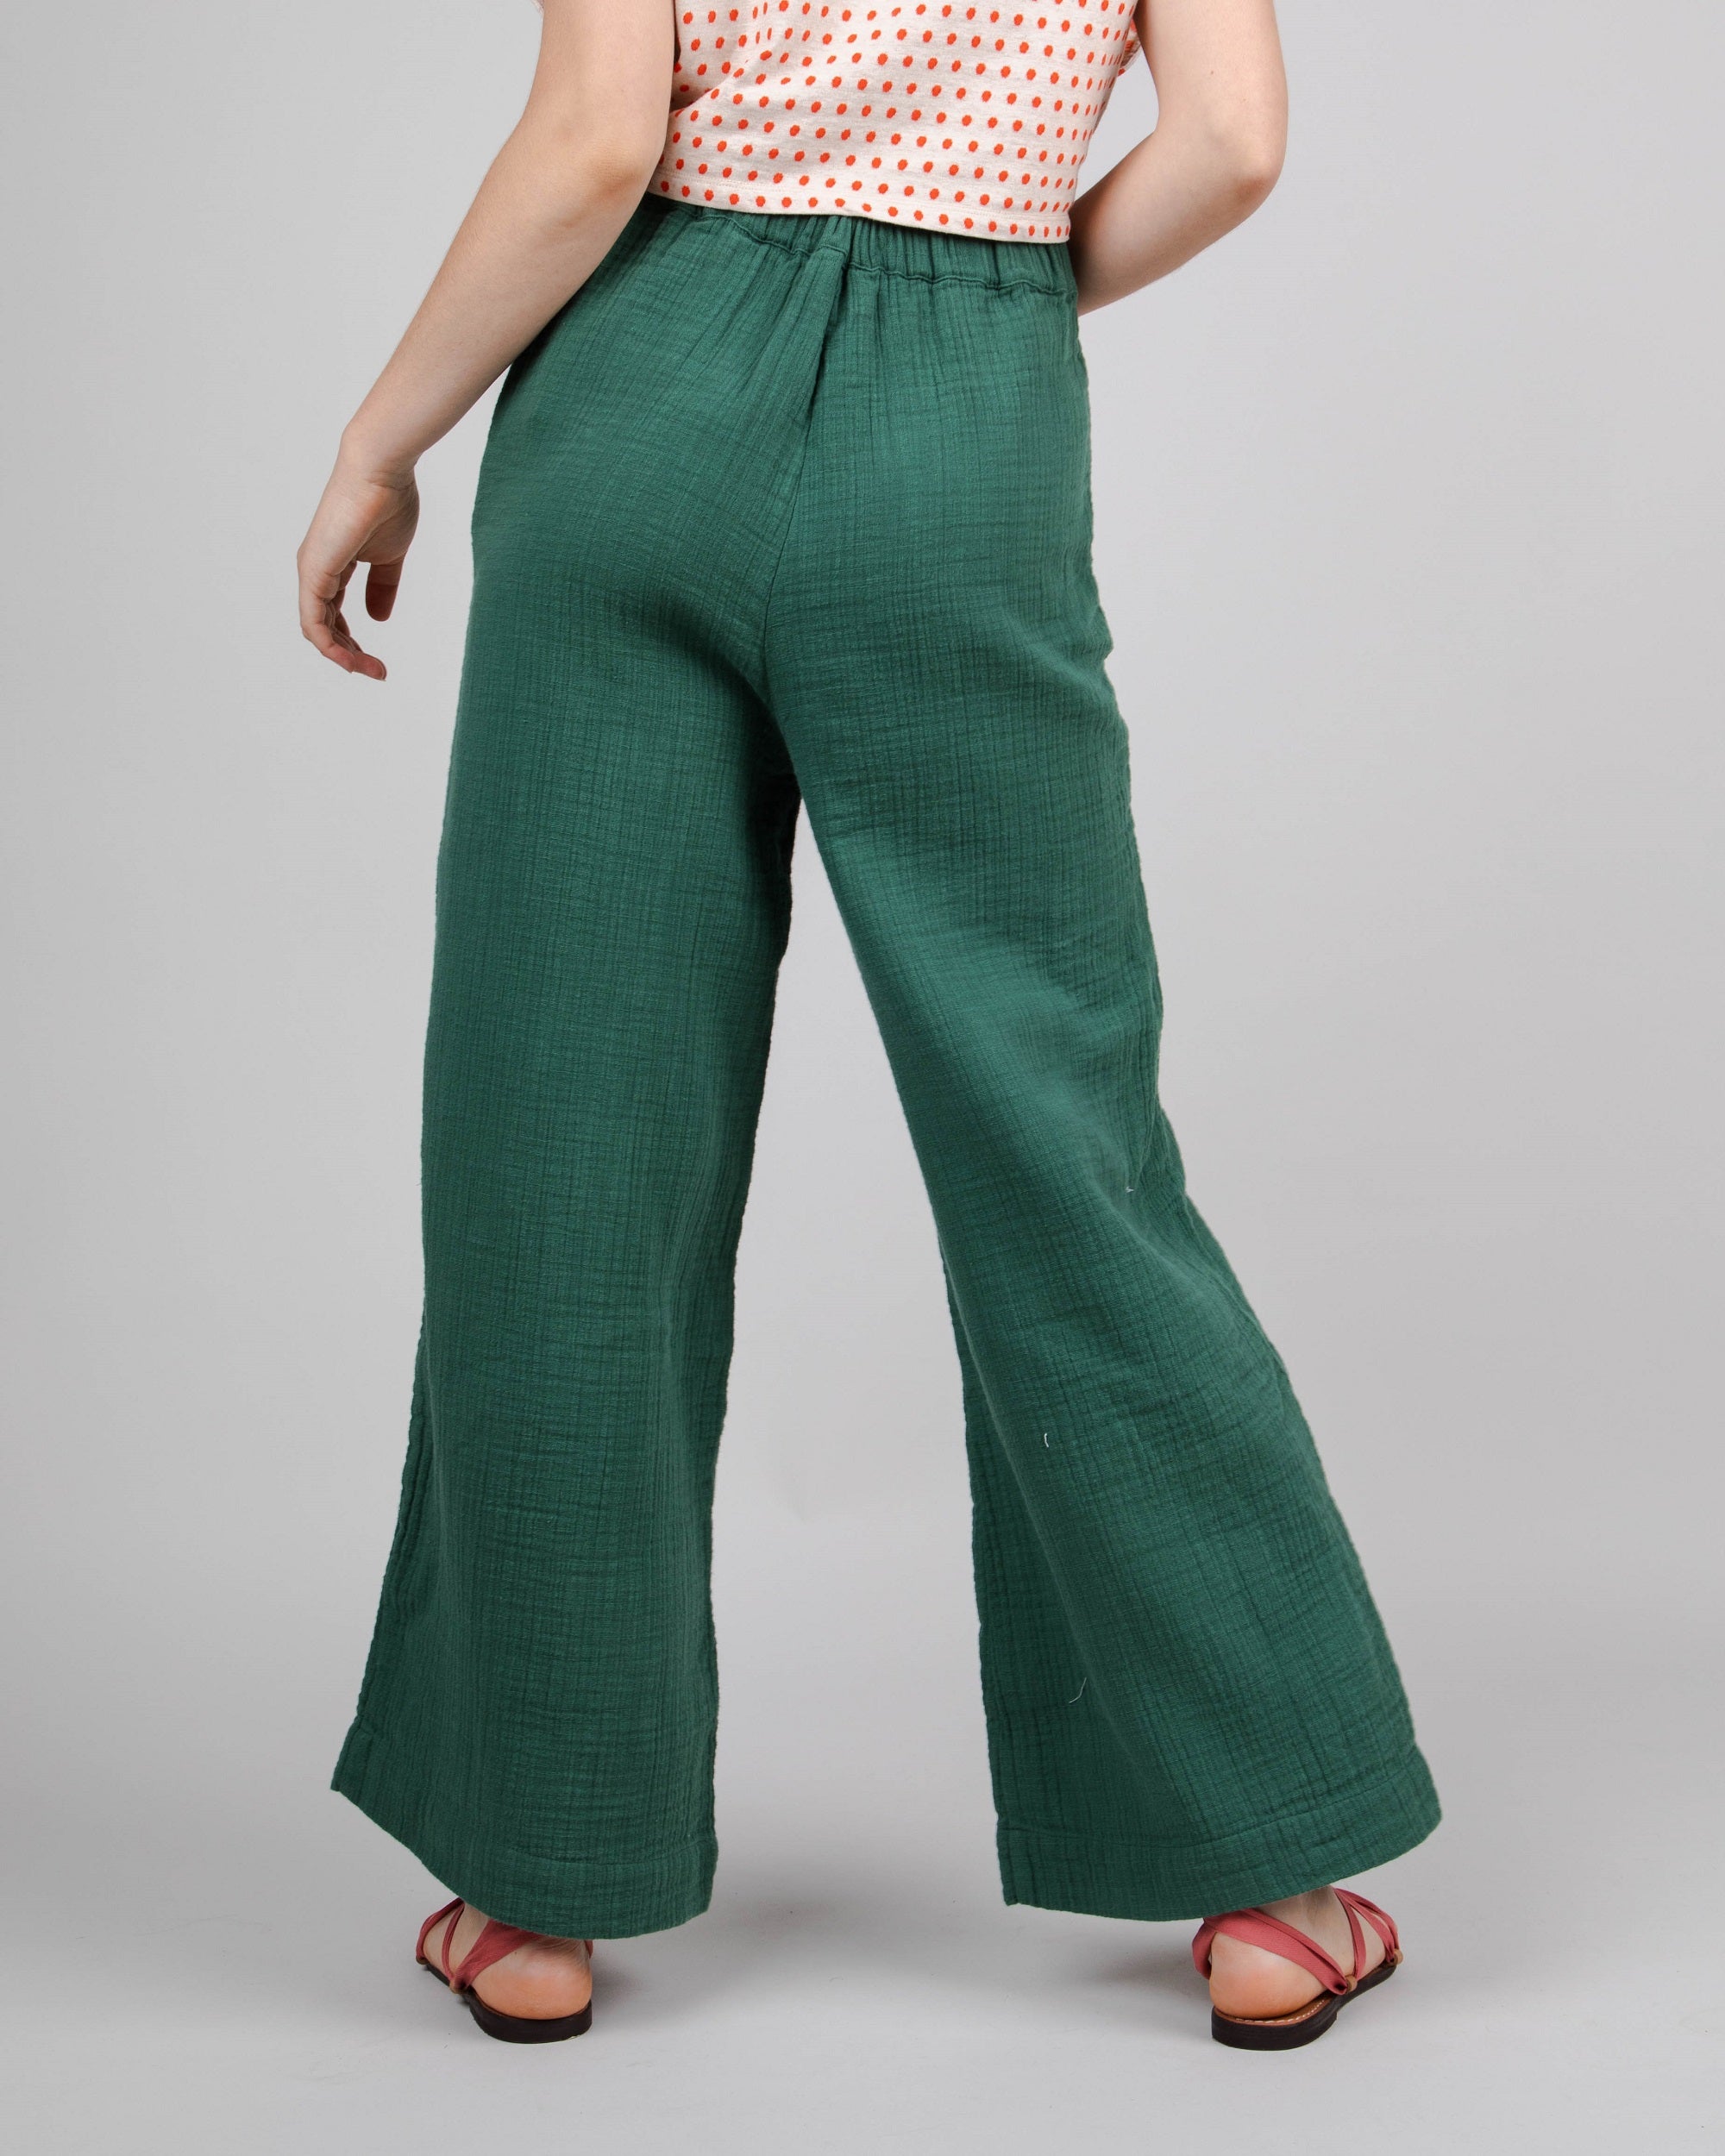 Pantalon ample pour femme vert en coton bio 